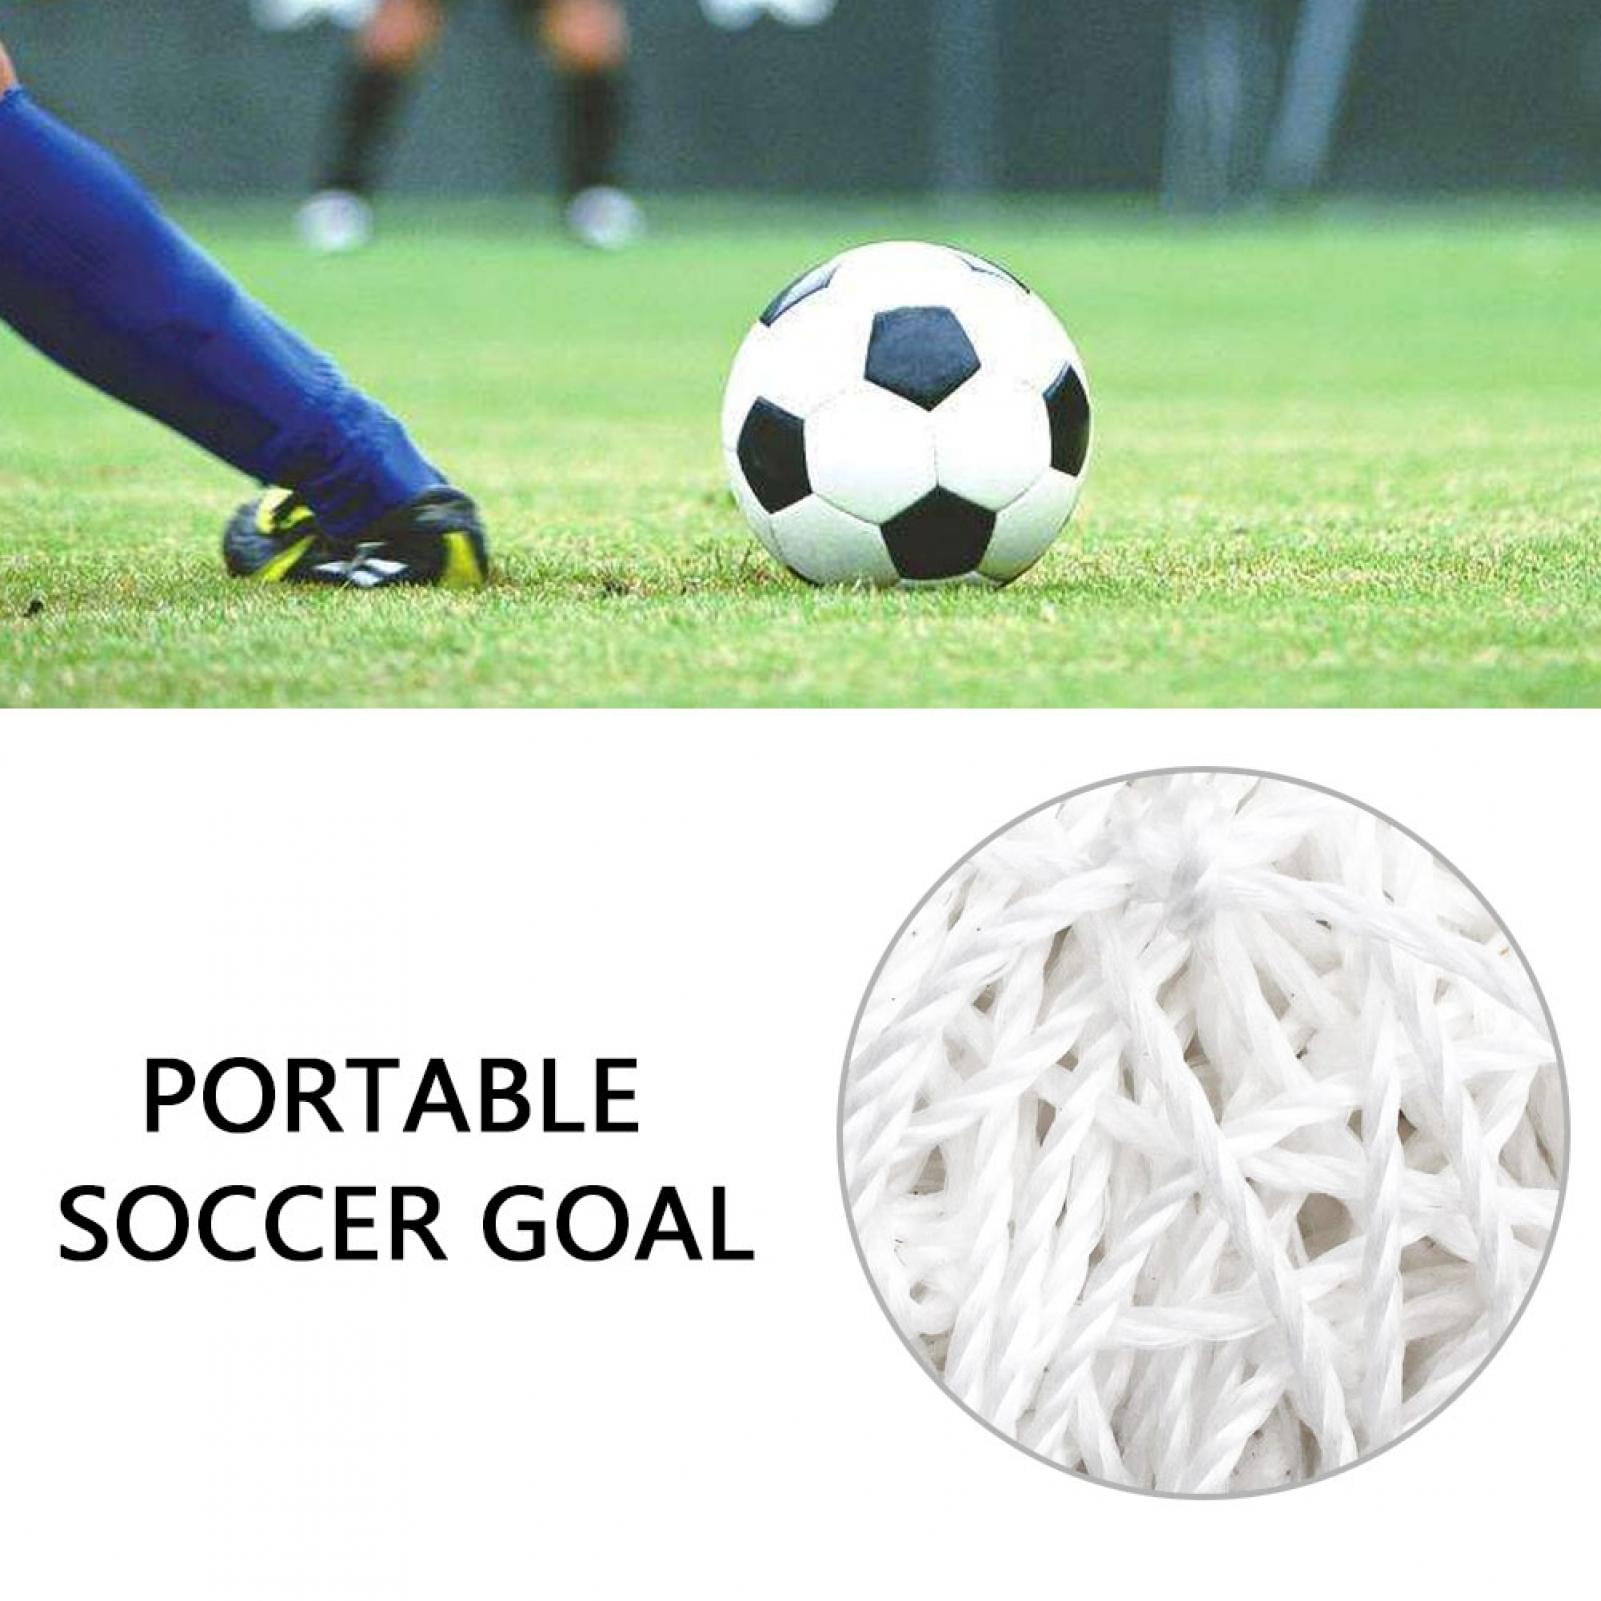 24 x 8ft for Feild Football Goal Net Soccer Goal Net Football Replacement Net Standard Size 10 x 7ft 18 x 7ft 